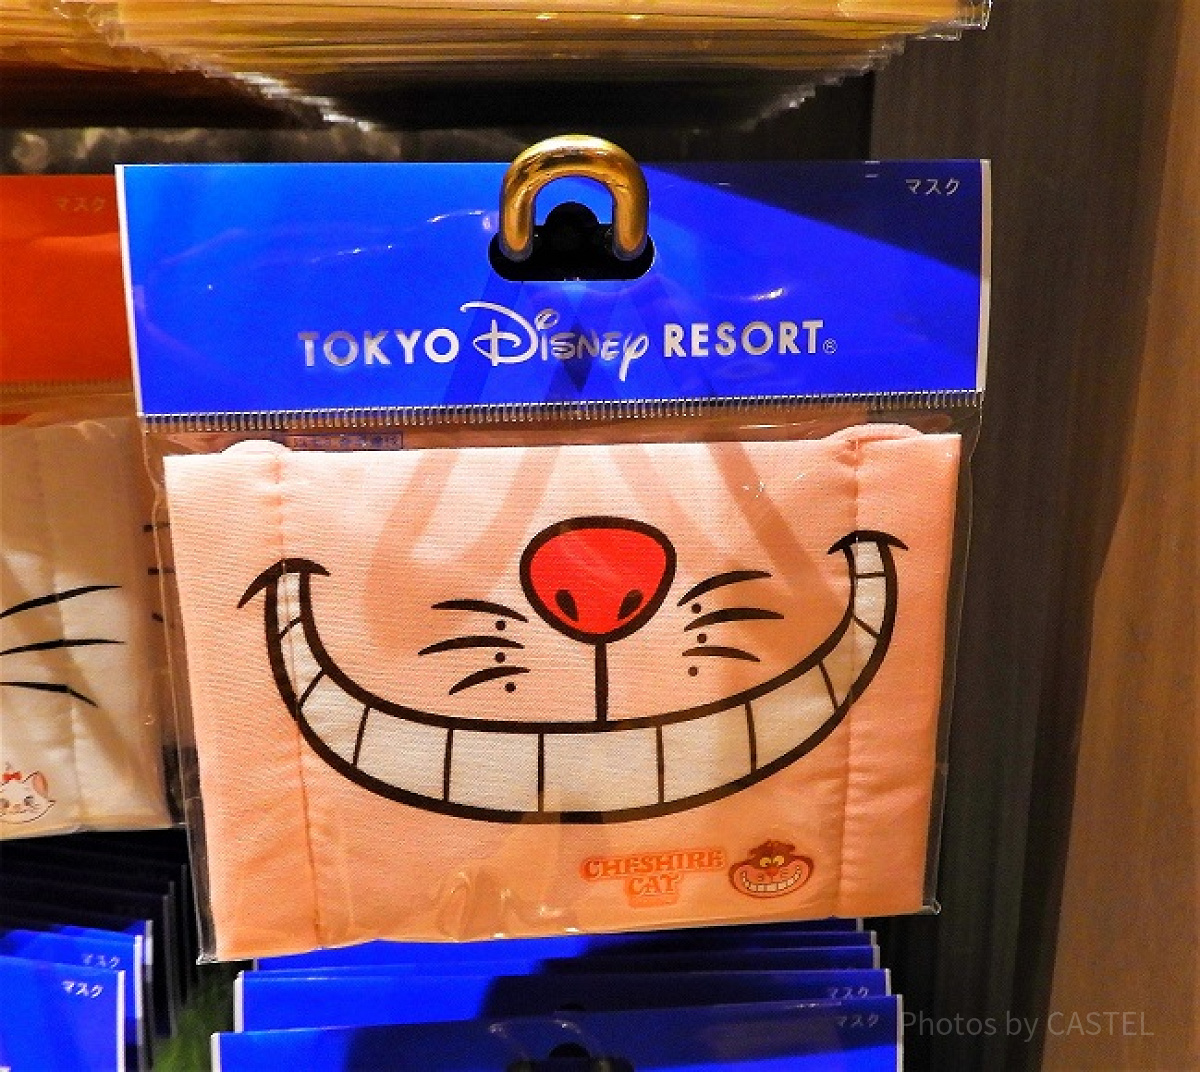 チェシャ猫らしい、大きな笑顔が可愛いマスク